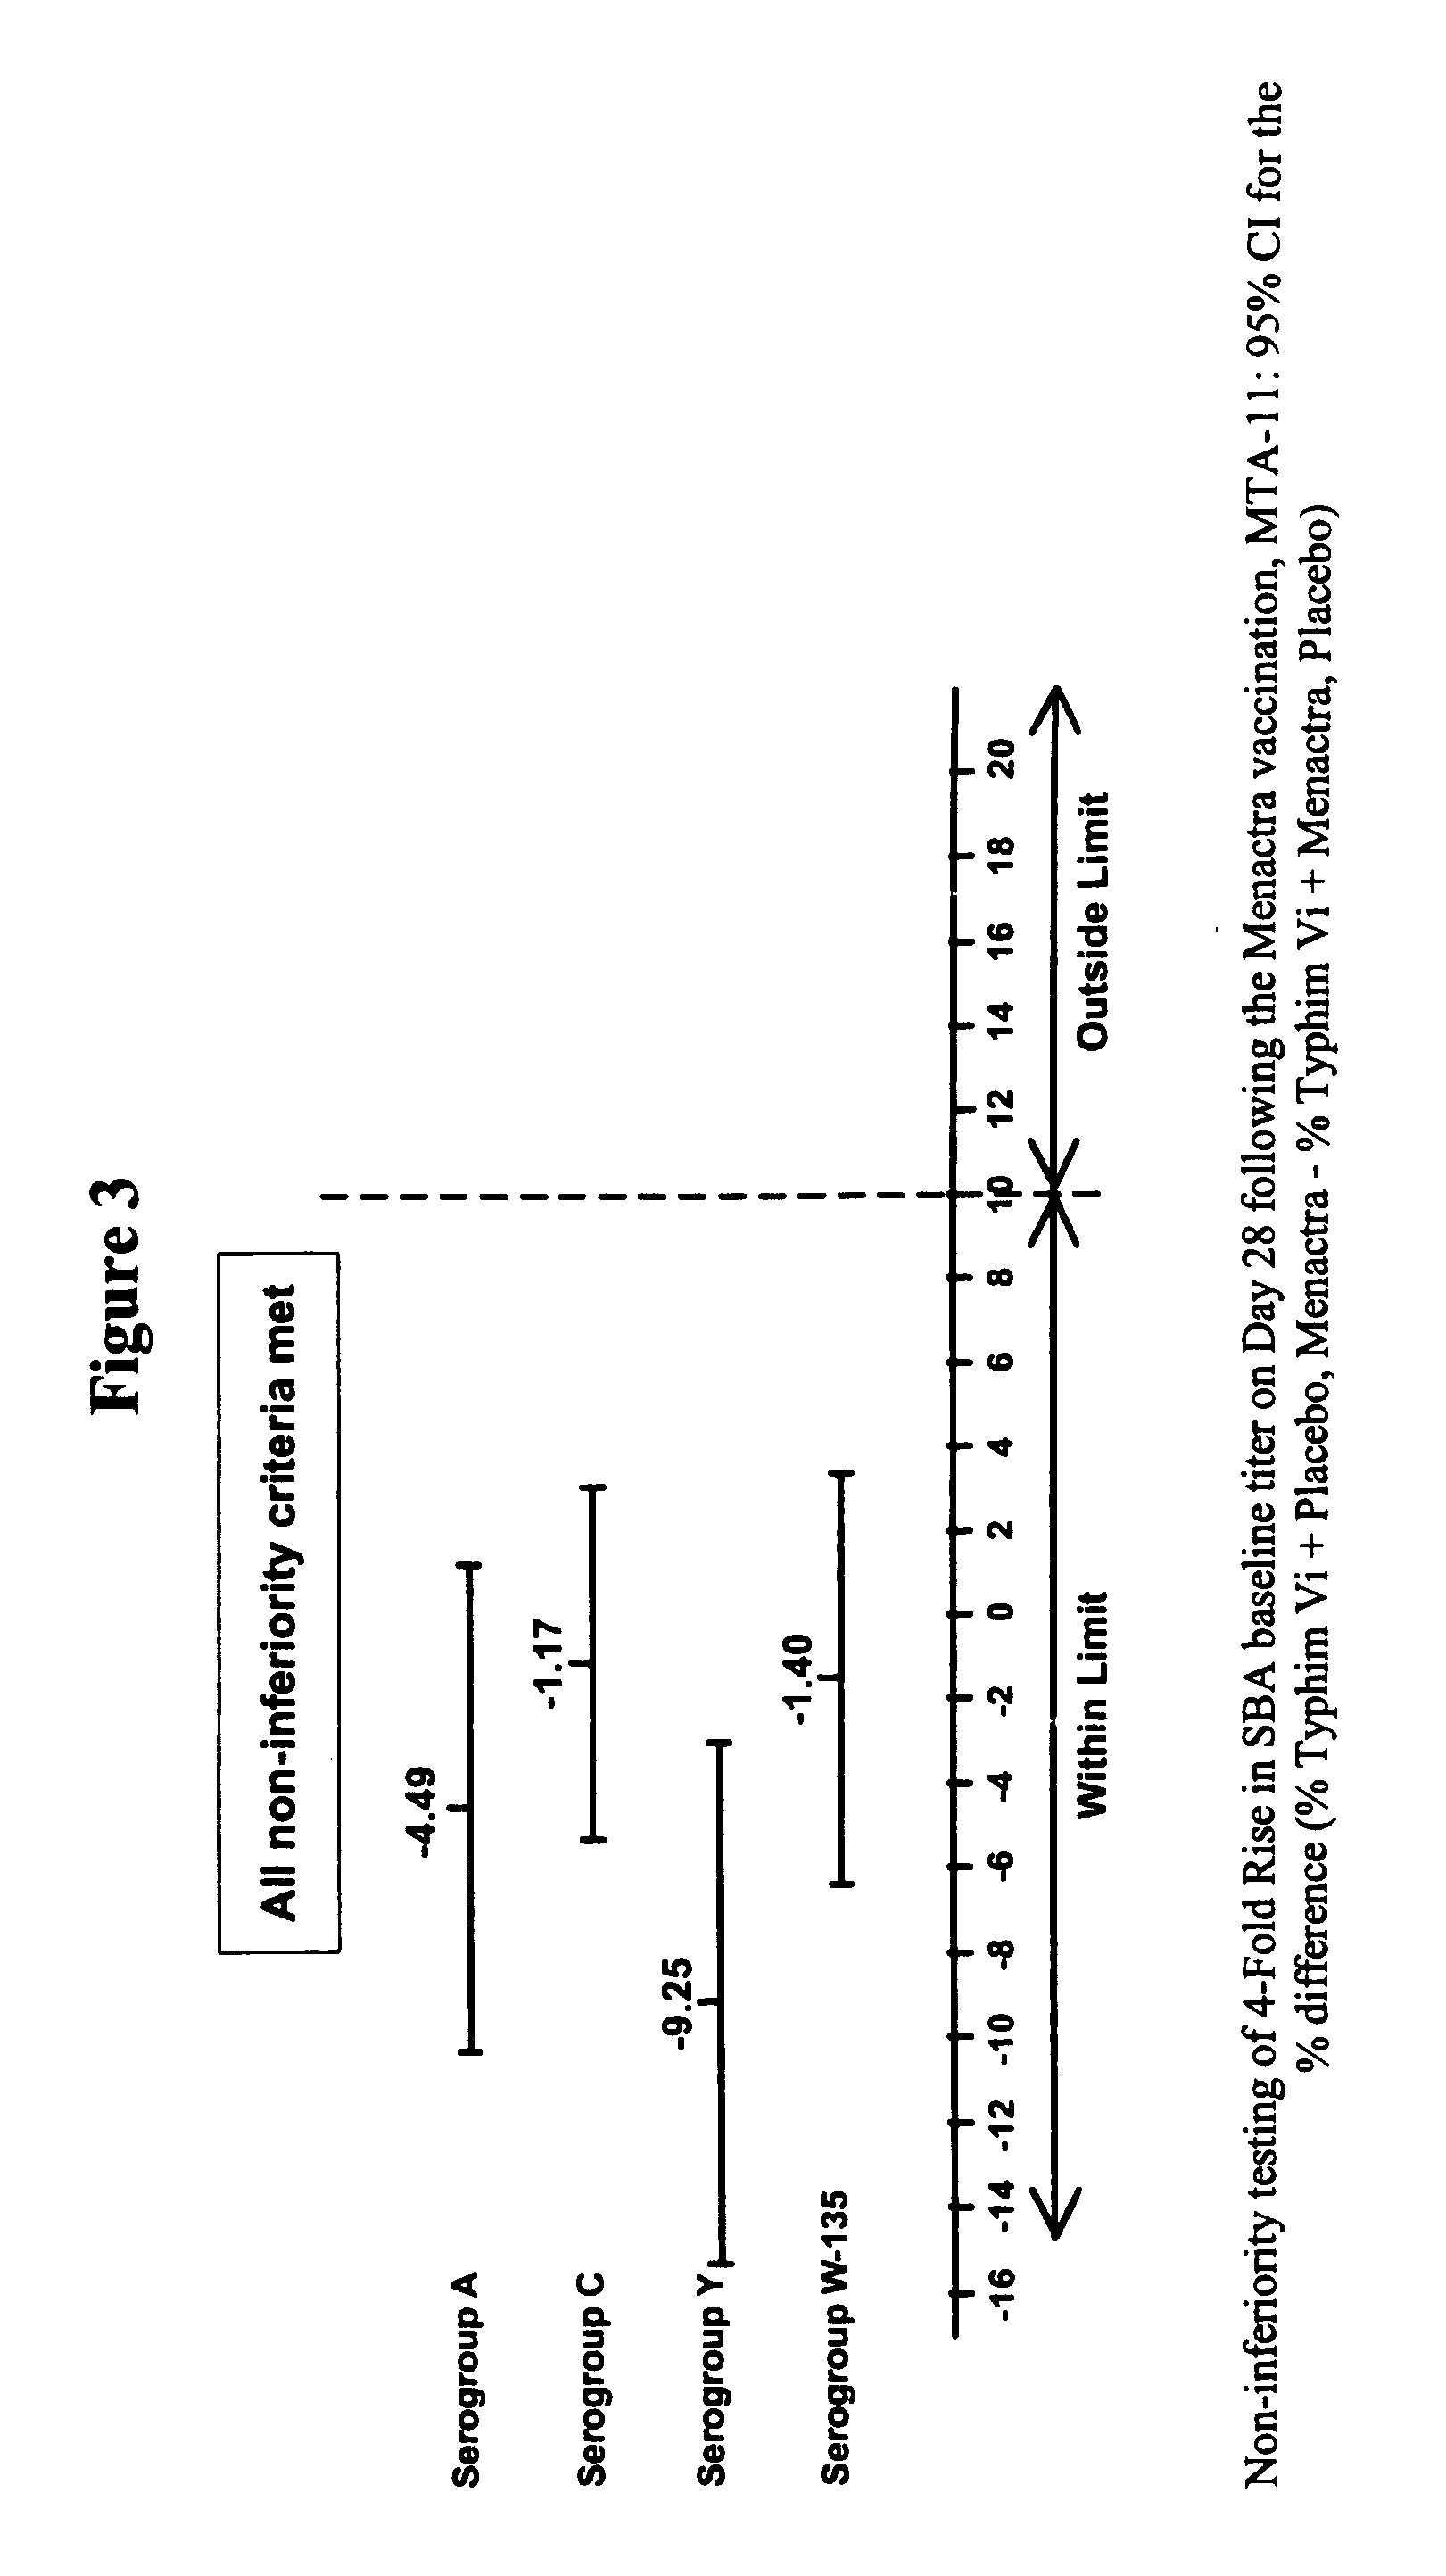 Multivalent meningococcal derivatized polysaccharide-protein conjugates and vaccine